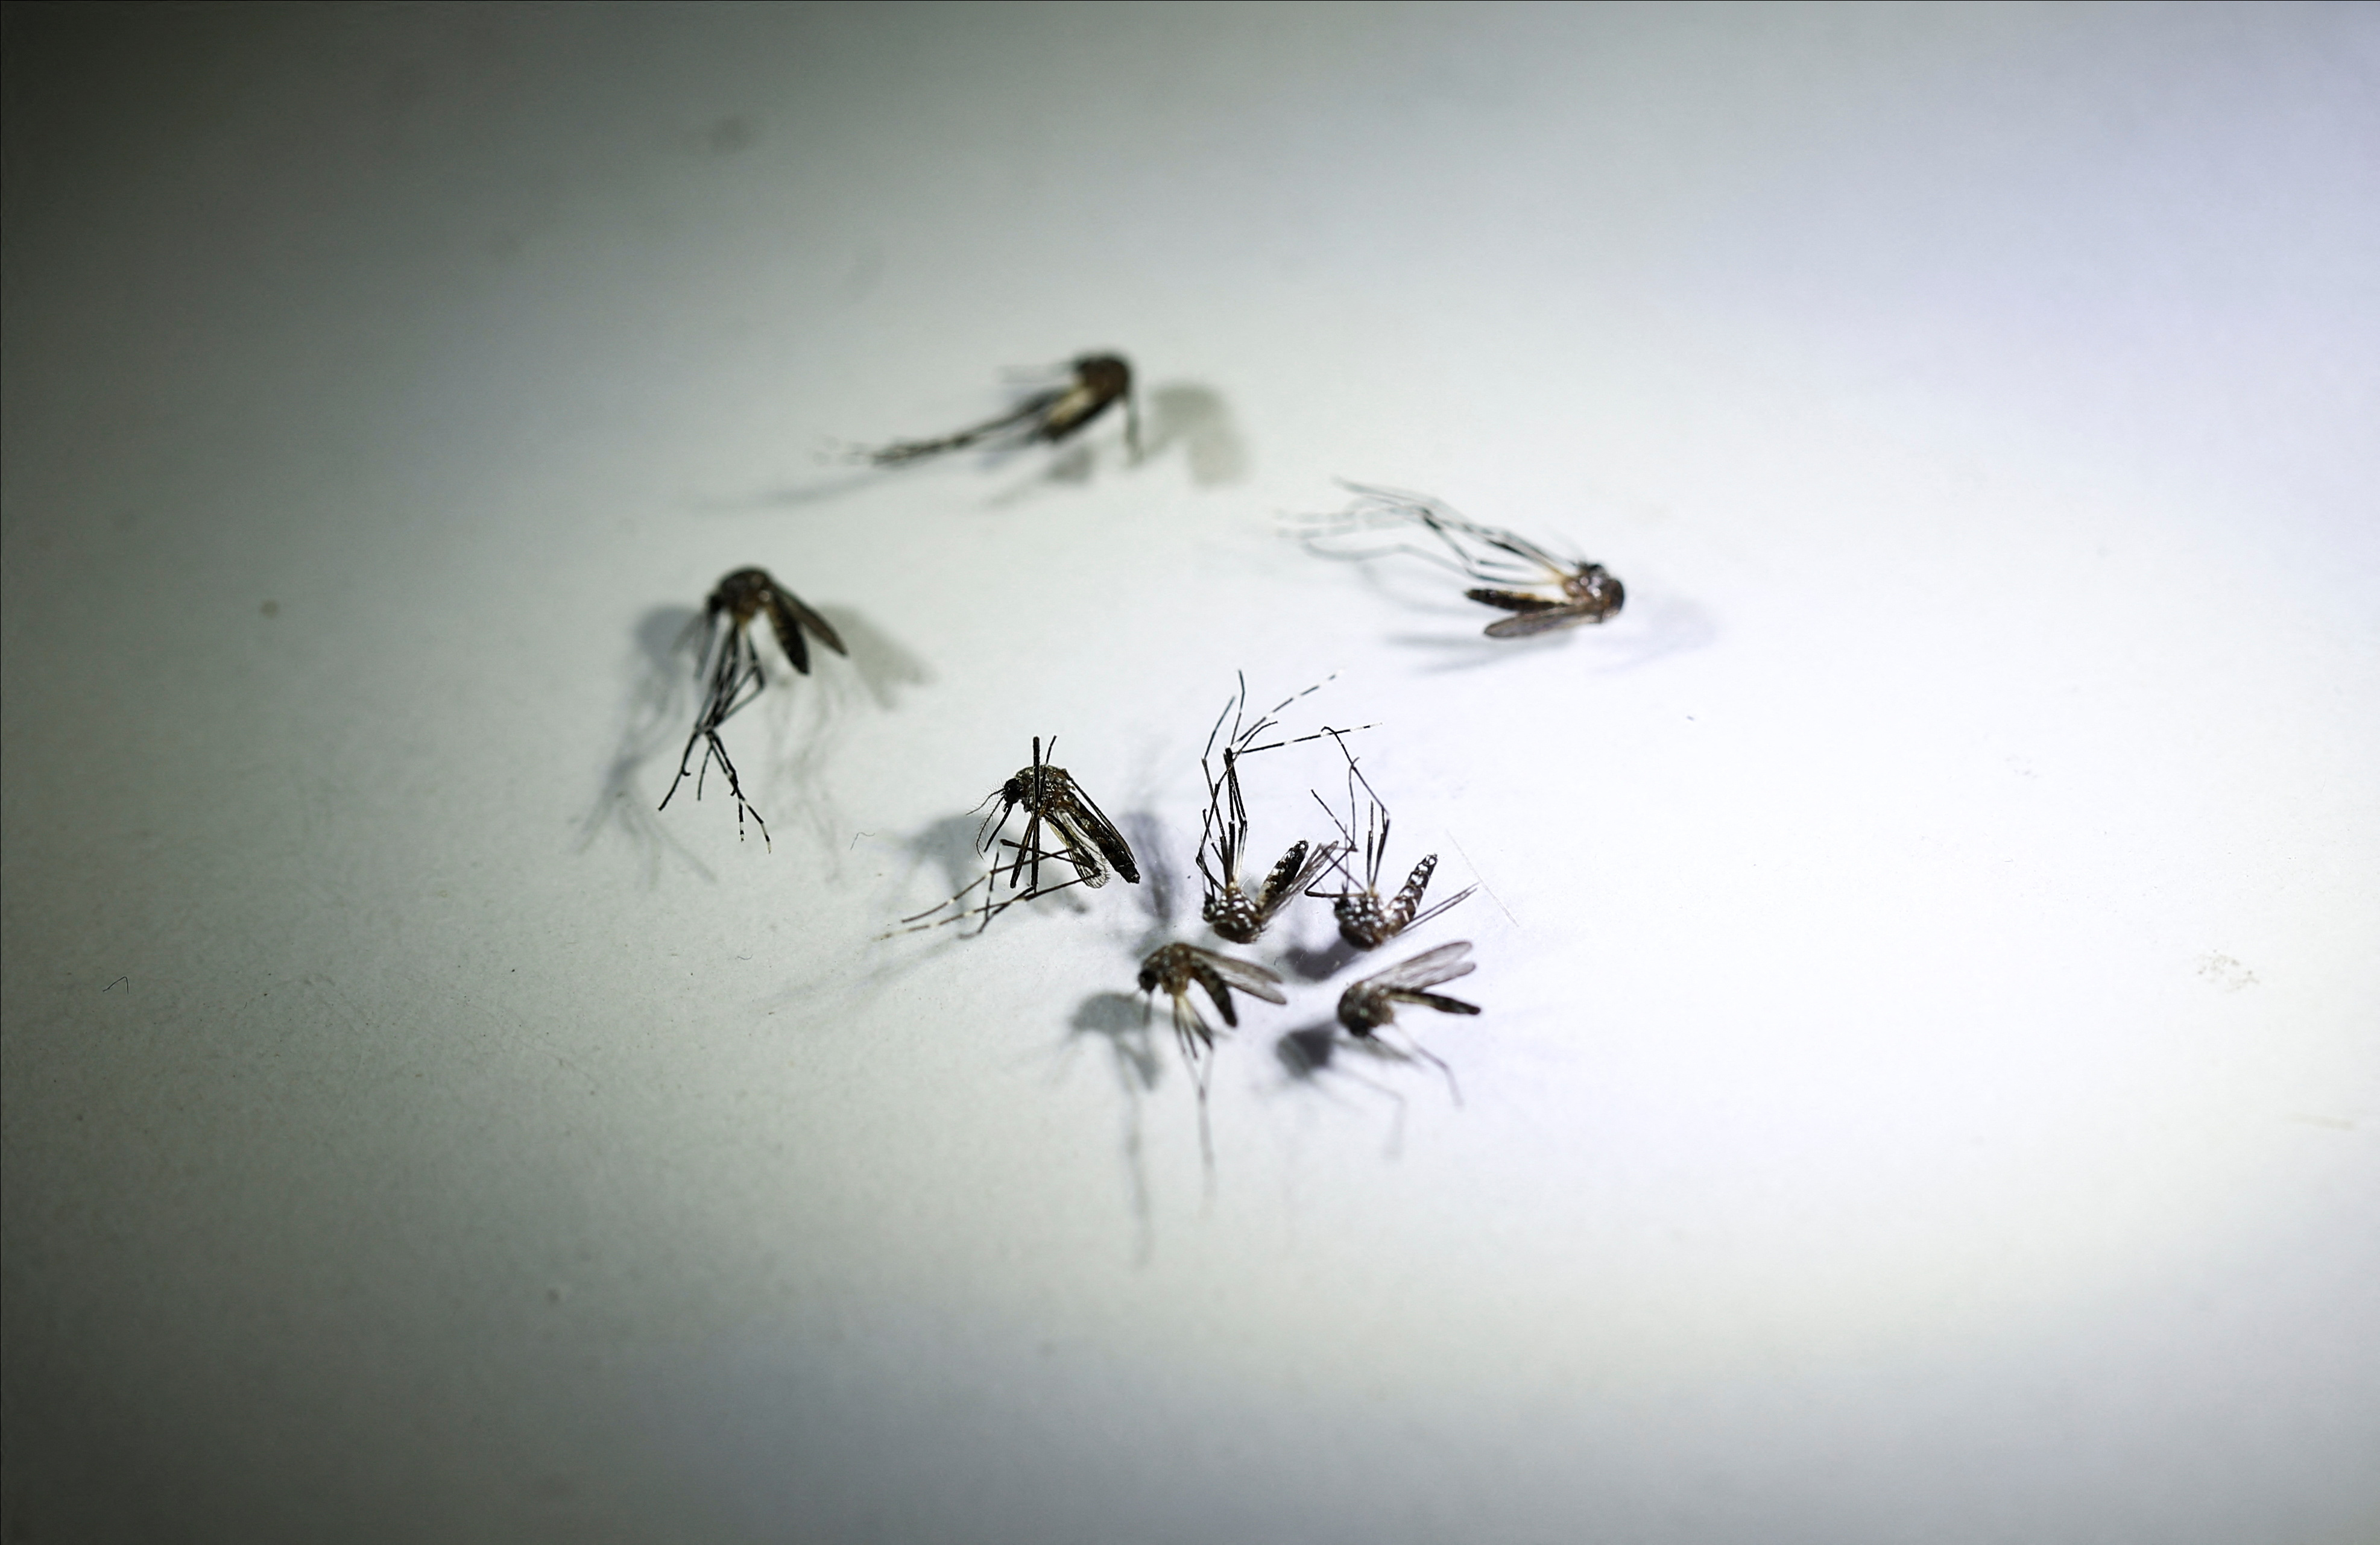 SC passa de 180 mortes por dengue, mas vacinação segue baixa